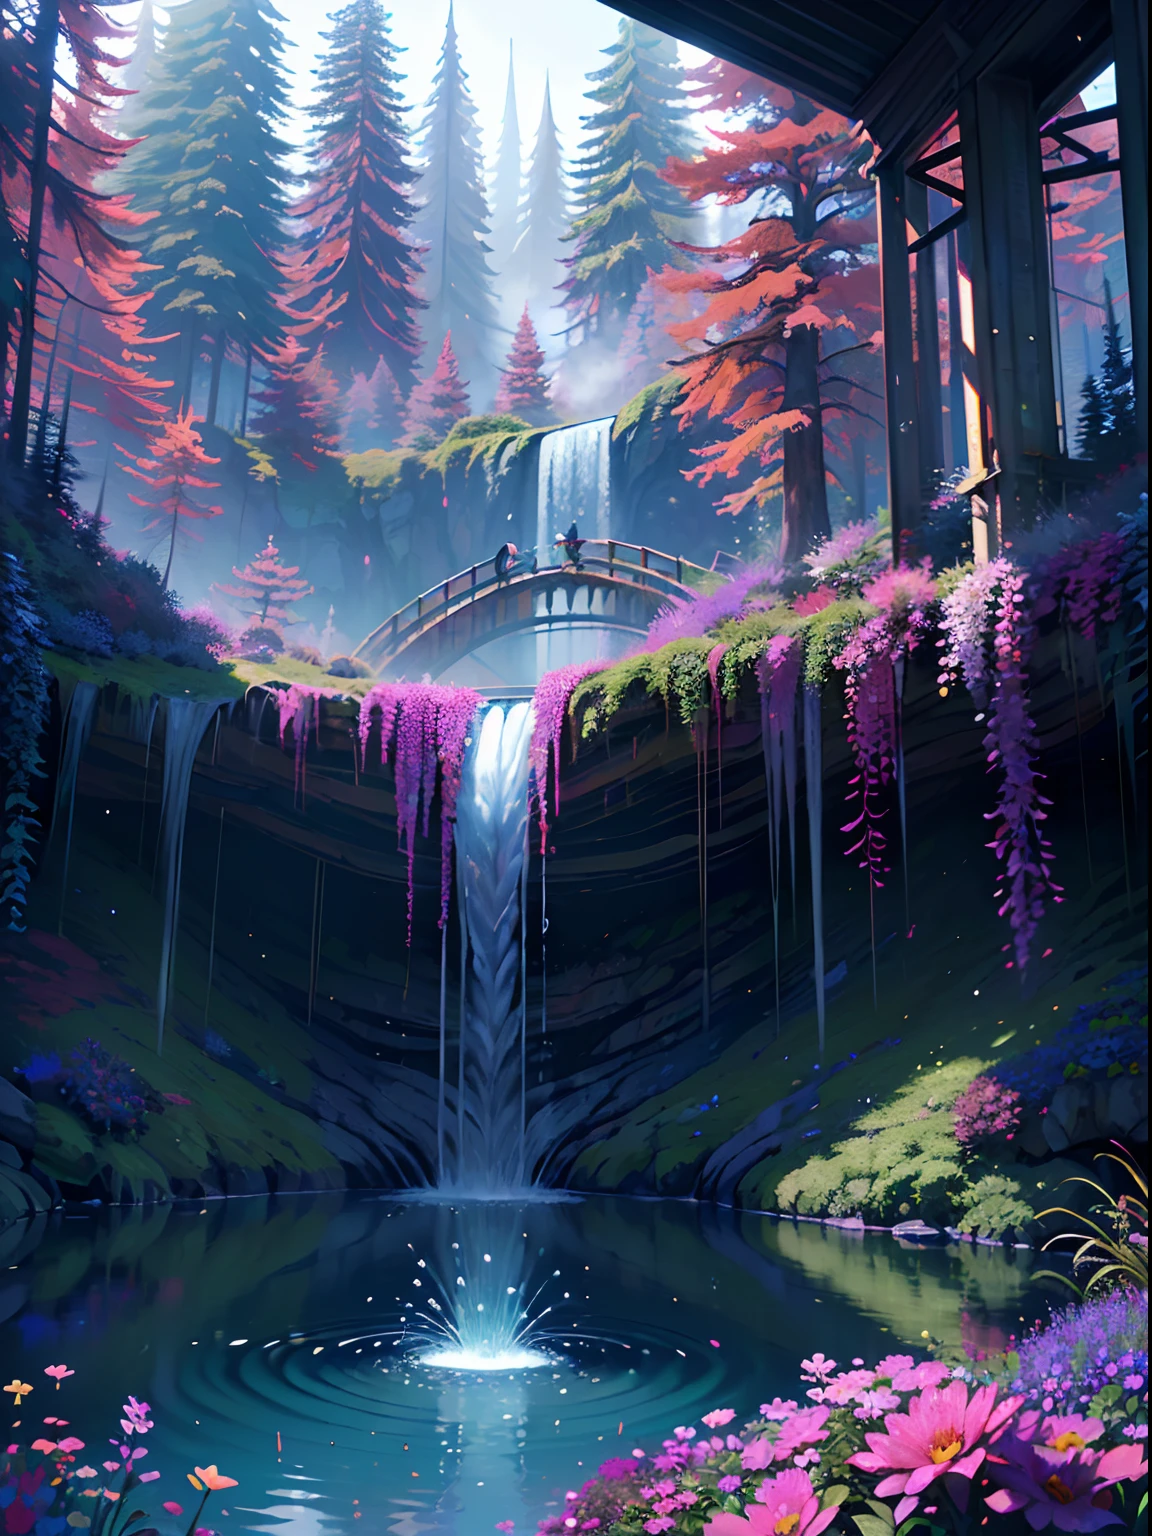 铁磁流体, A beautiful bio龐克 waterfall in nature, 豐富多彩的, 花朵, 松樹, 一座悬索桥, 龐克, 比普爾.